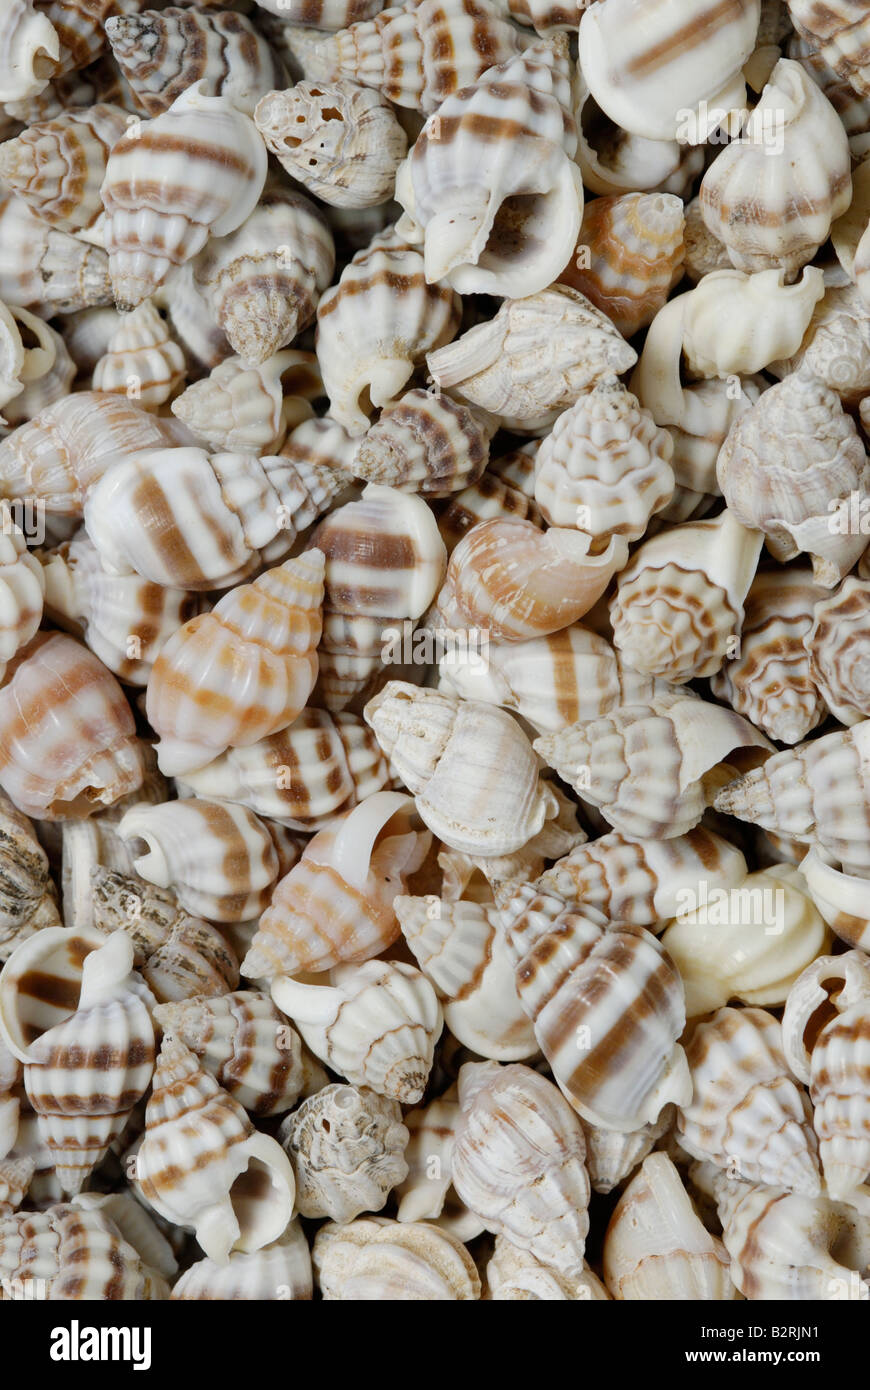 Une collection de petits coquillages gastéropodes Les gastéropodes sont des mollusques à coquille unique Banque D'Images